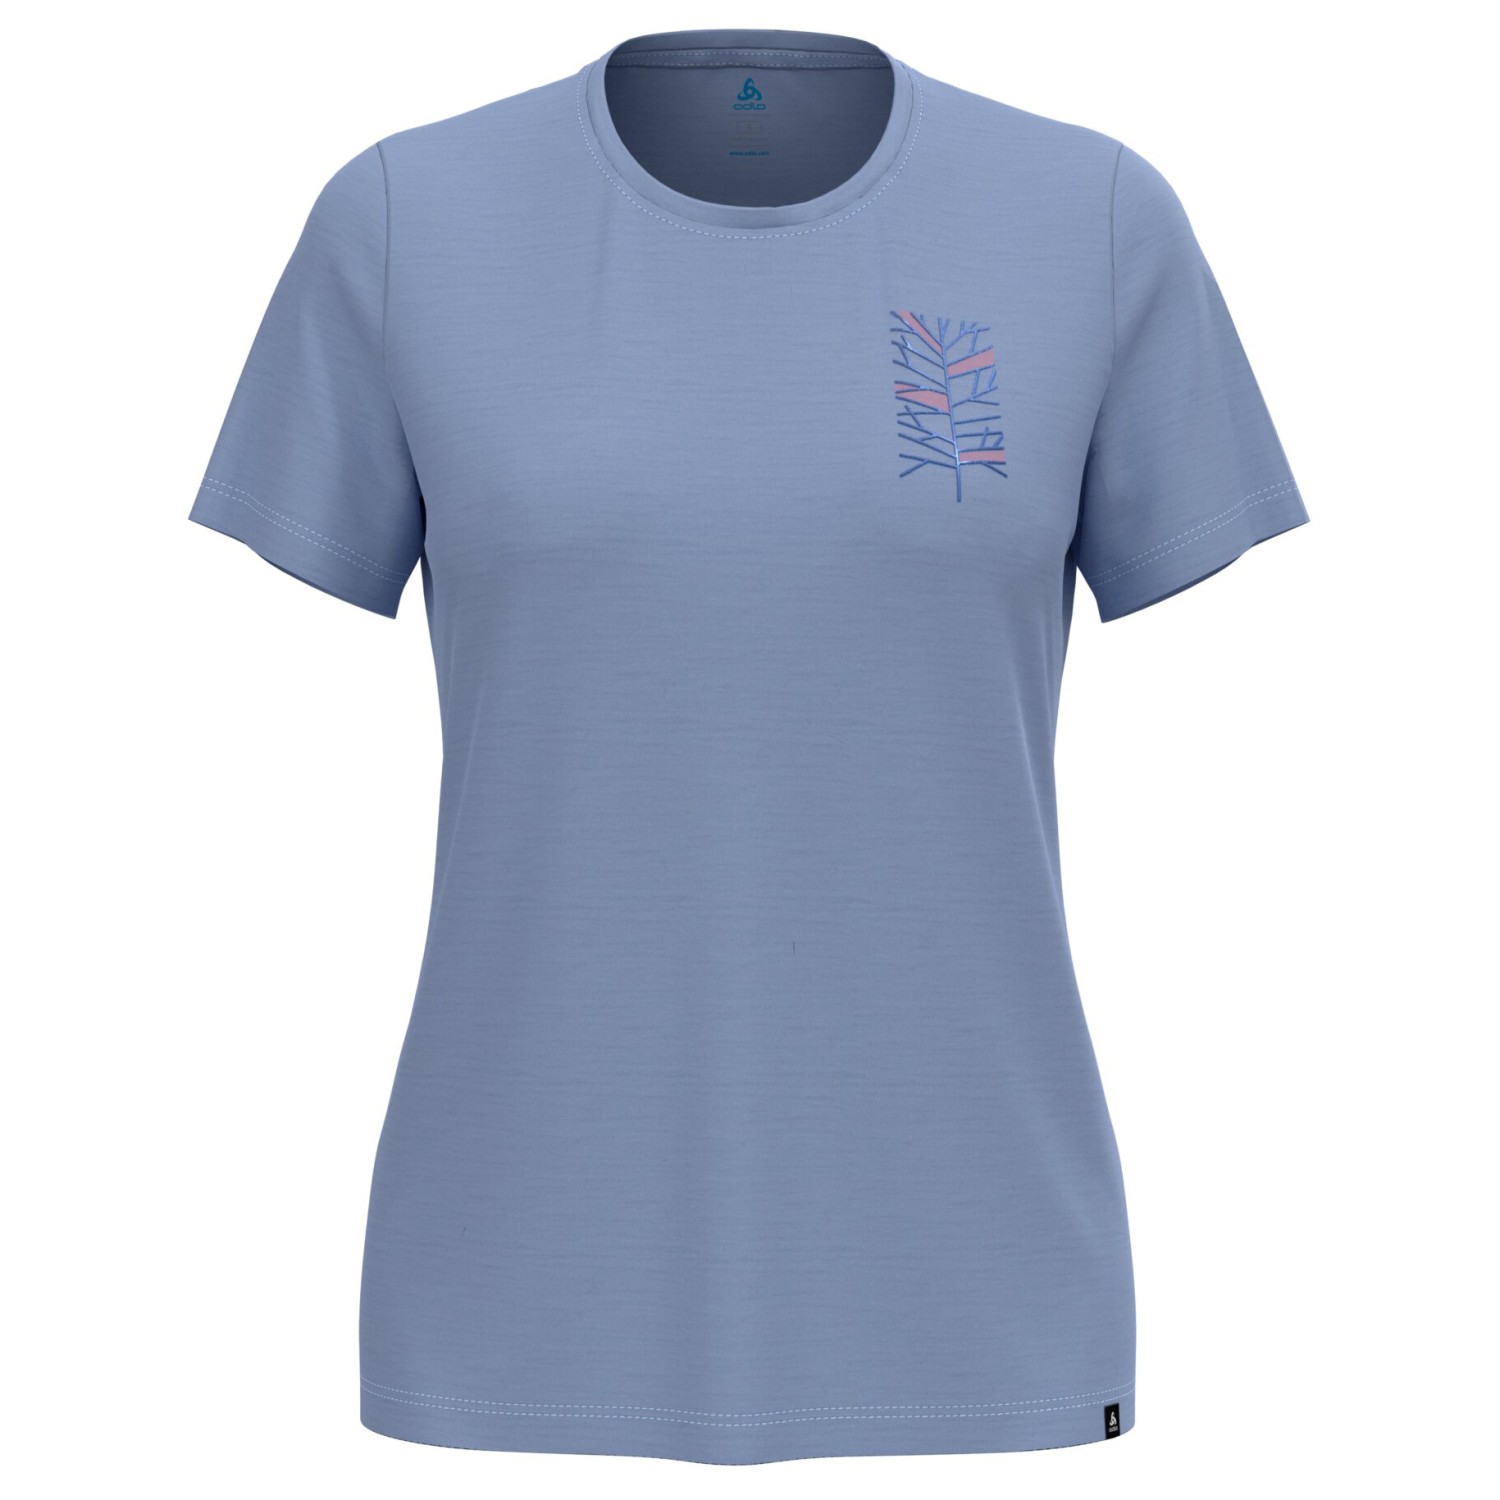 Рубашка из мериноса Odlo Women's Ascent Merino 160 Tree Crew Neck S/S, цвет Blue Heron кардиган uniqlo extra fine merino crew neck черный размер s